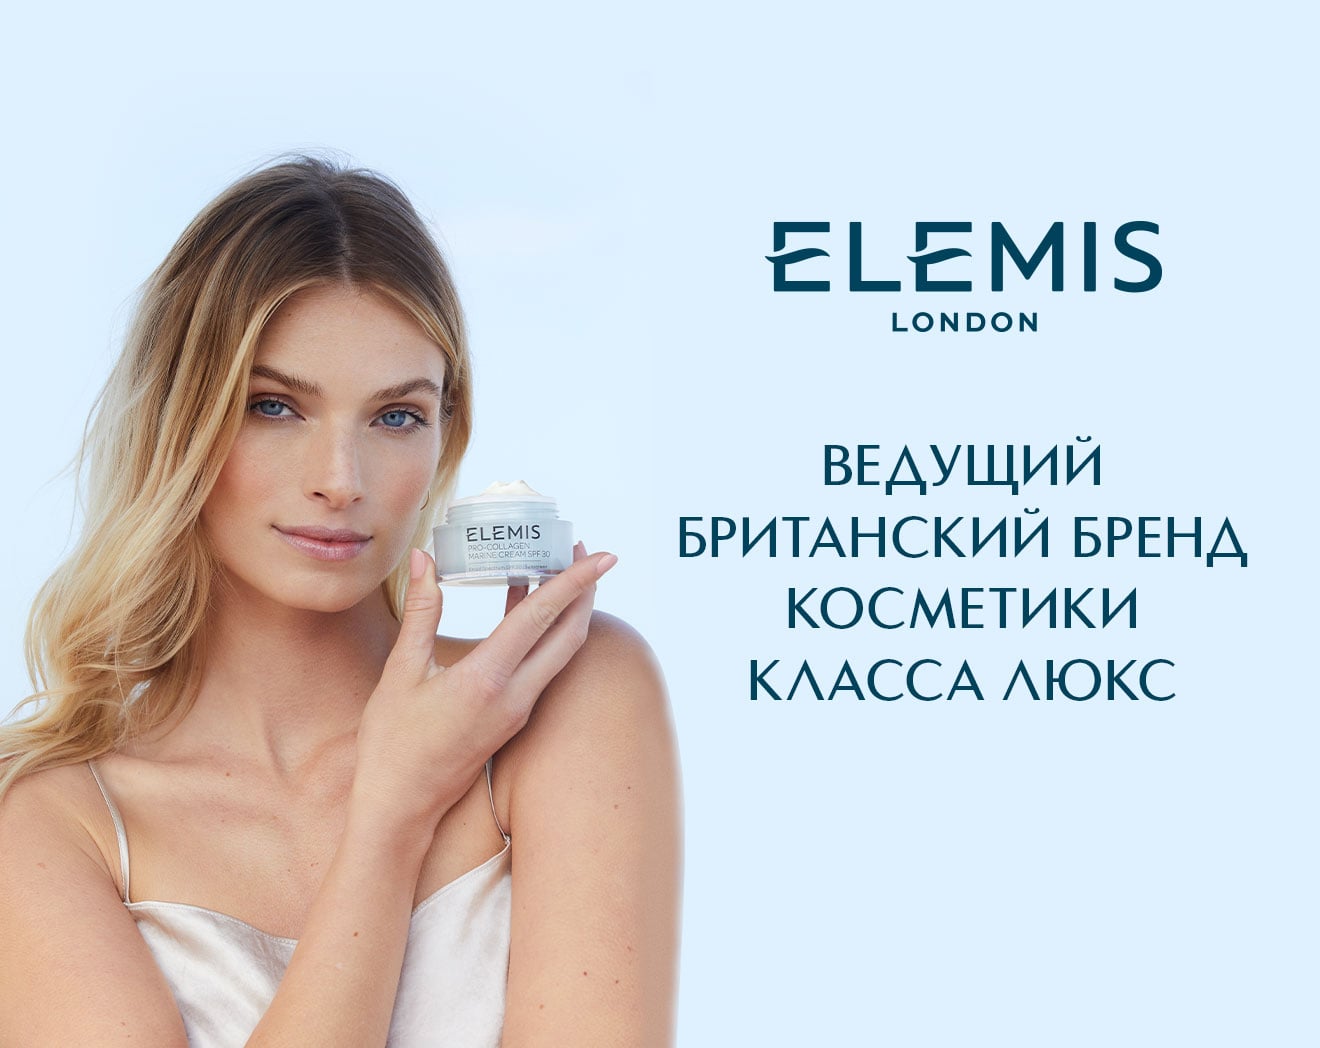 Встречайте новый бренд ELEMIS в ИЛЬ ДЕ БОТЭ! 